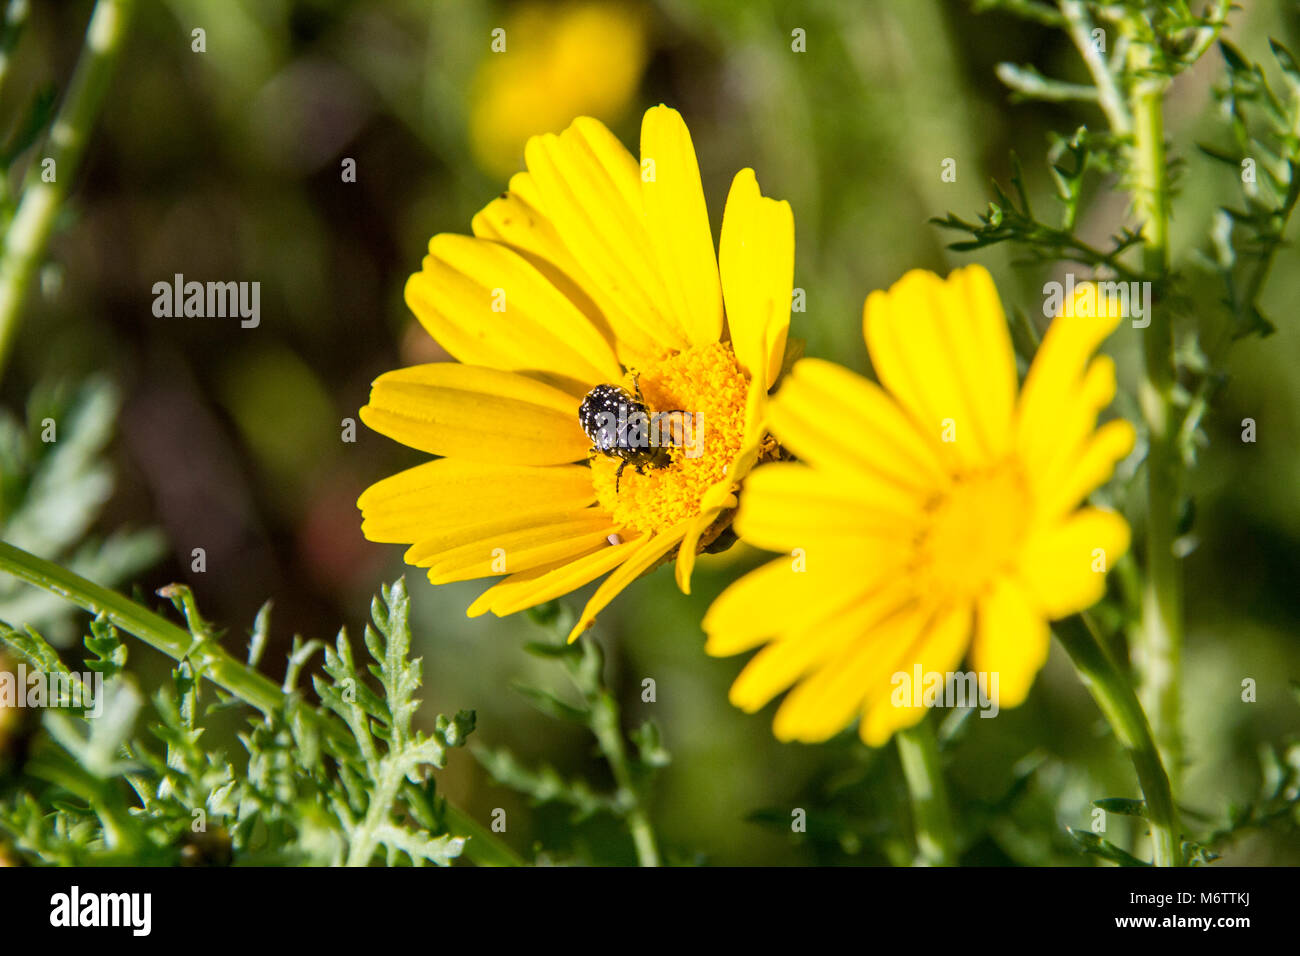 Schwarze Käfer pollinates Eine gelbe Daisy wildflower auf grünem Gras Hintergrund. Nahaufnahme von Blumen auf einer Wiese. Feder Coceptual Bild Stockfoto